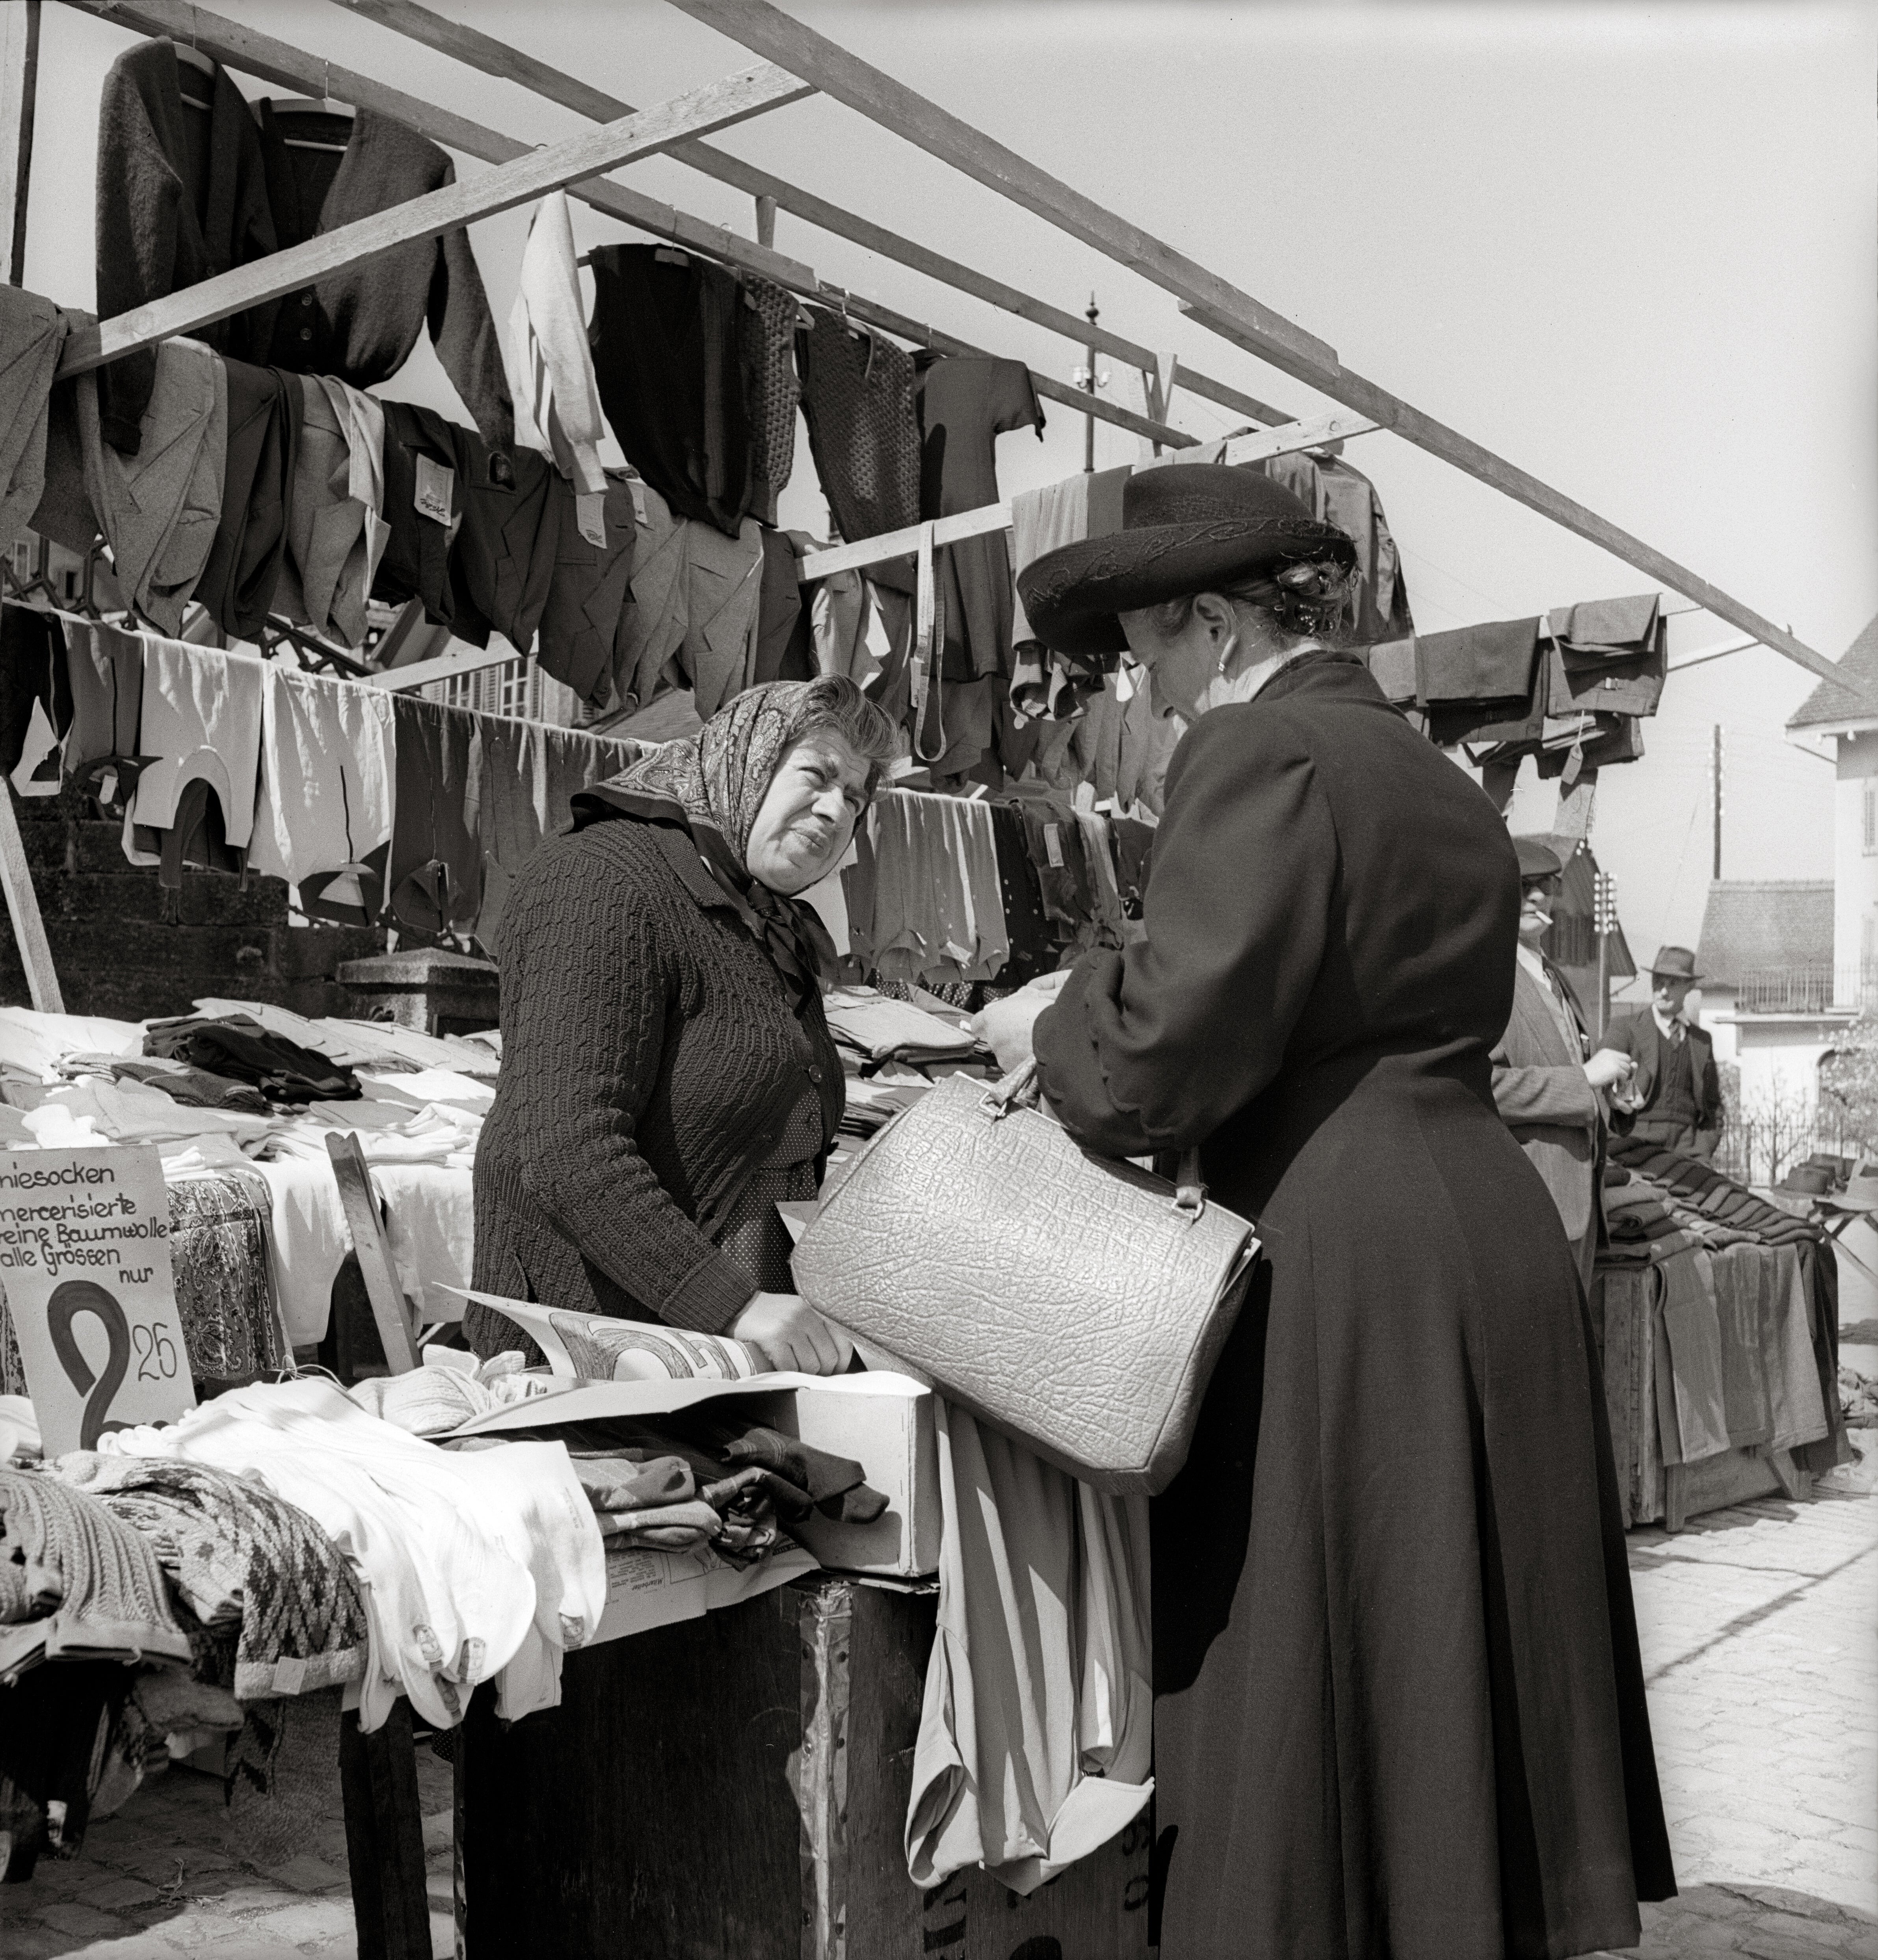 На рынке в Штансе, 1948. Фотограф Леонард фон Матт